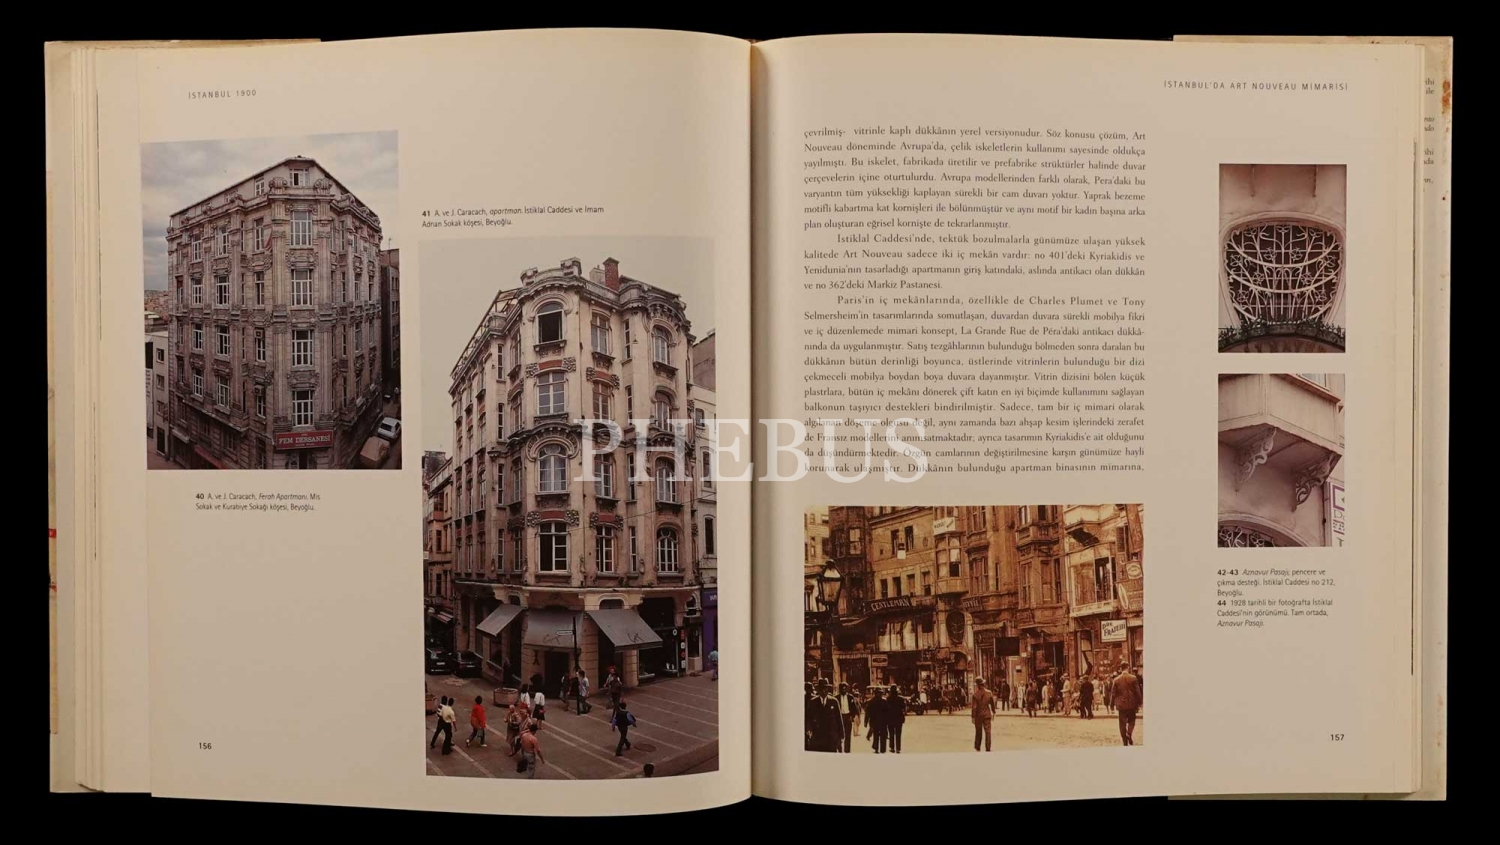 İSTANBUL 1900 (Art Nouveau Mimarisi ve İç Mekânları), Diana Barillari & Ezio Godoli, 1997, Yem Yayın, 227 sayfa, 26x30 cm...